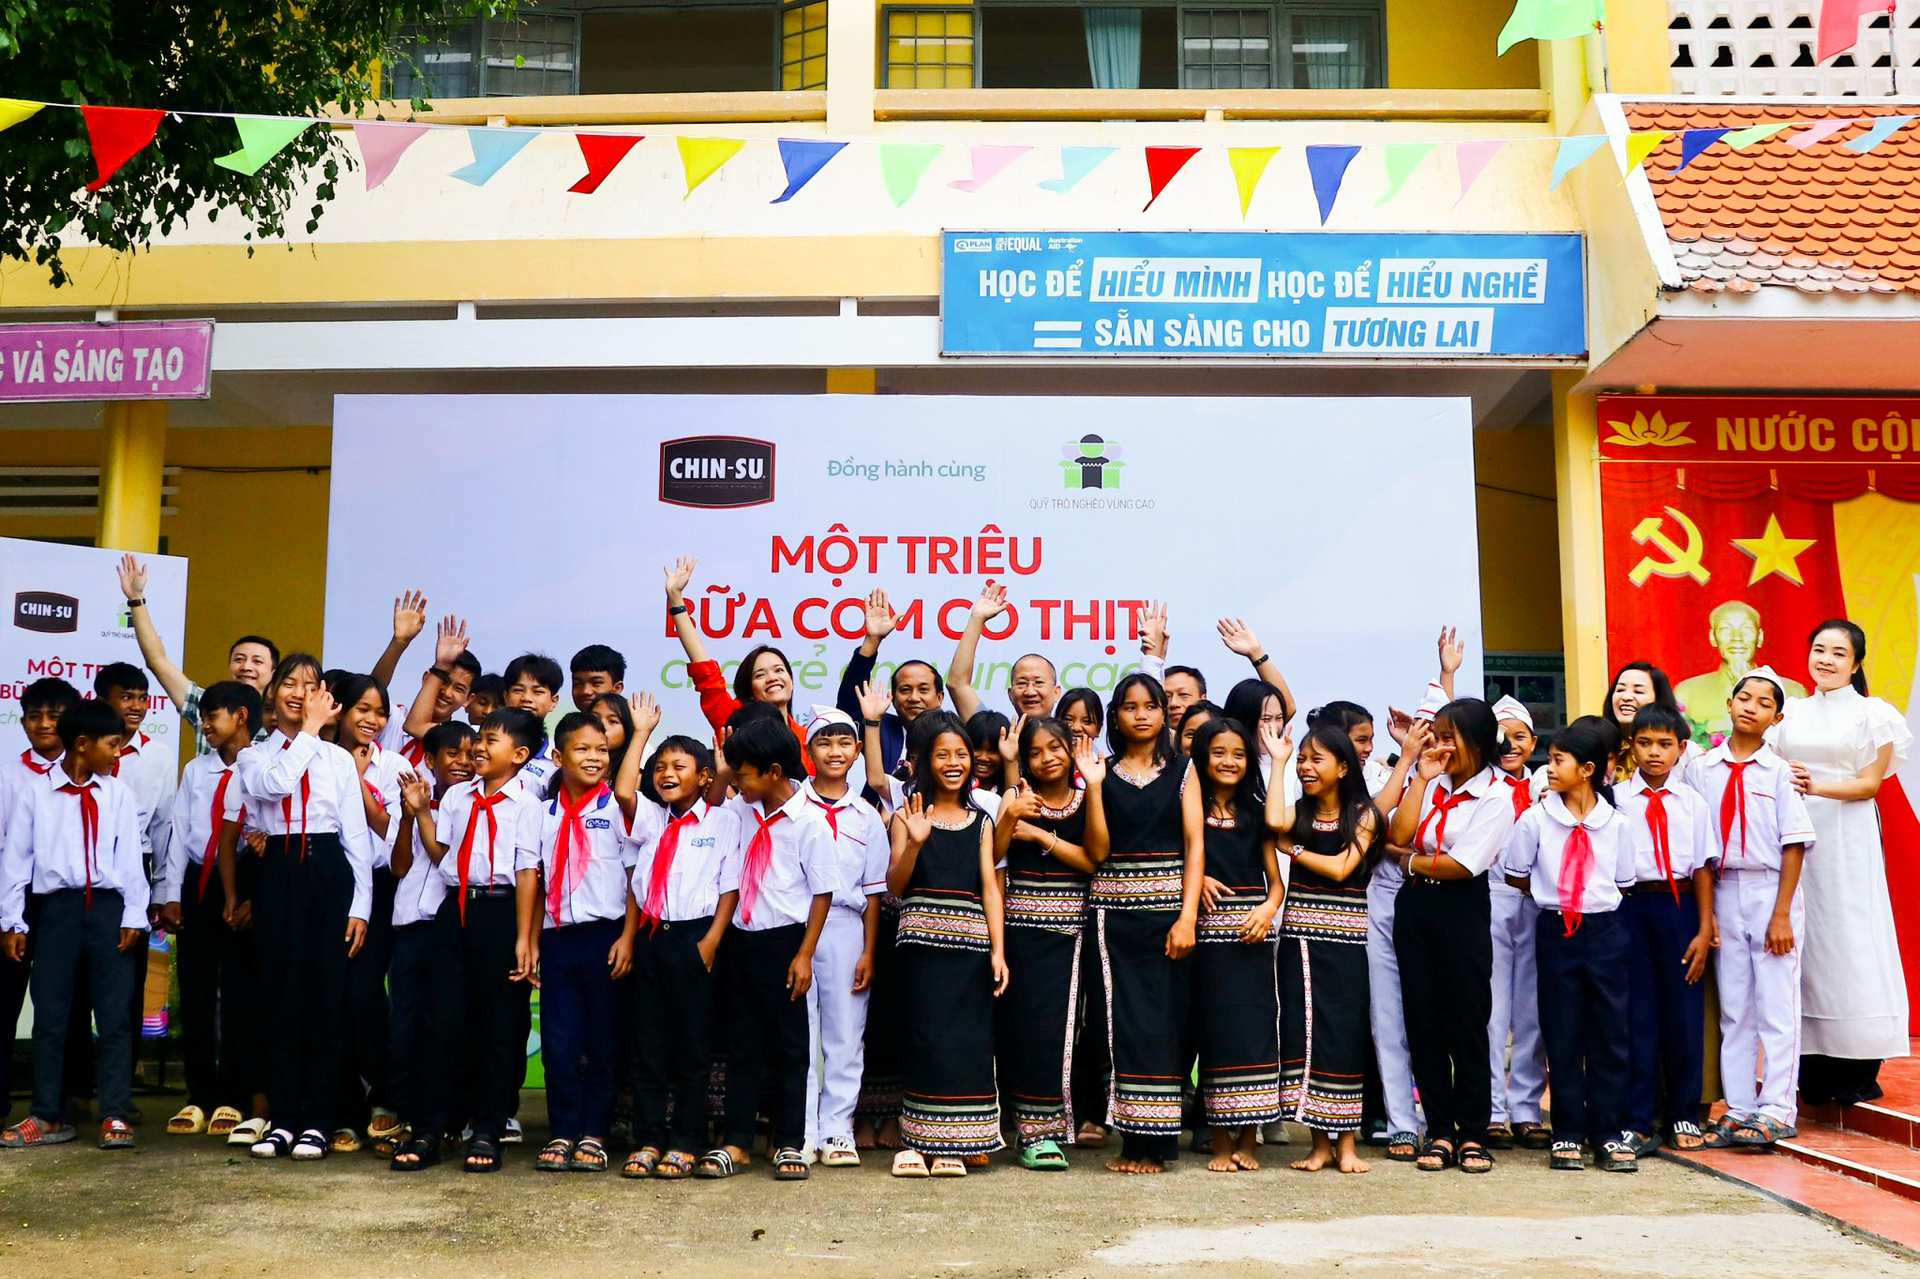 'Một triệu bữa cơm có thịt' do CHIN-SU cùng Quỹ Trò nghèo vùng cao thực hiện chính thức khởi động tại Trường Phổ thông dân tộc bán trú THCS Măng Cành, Kon Tum.